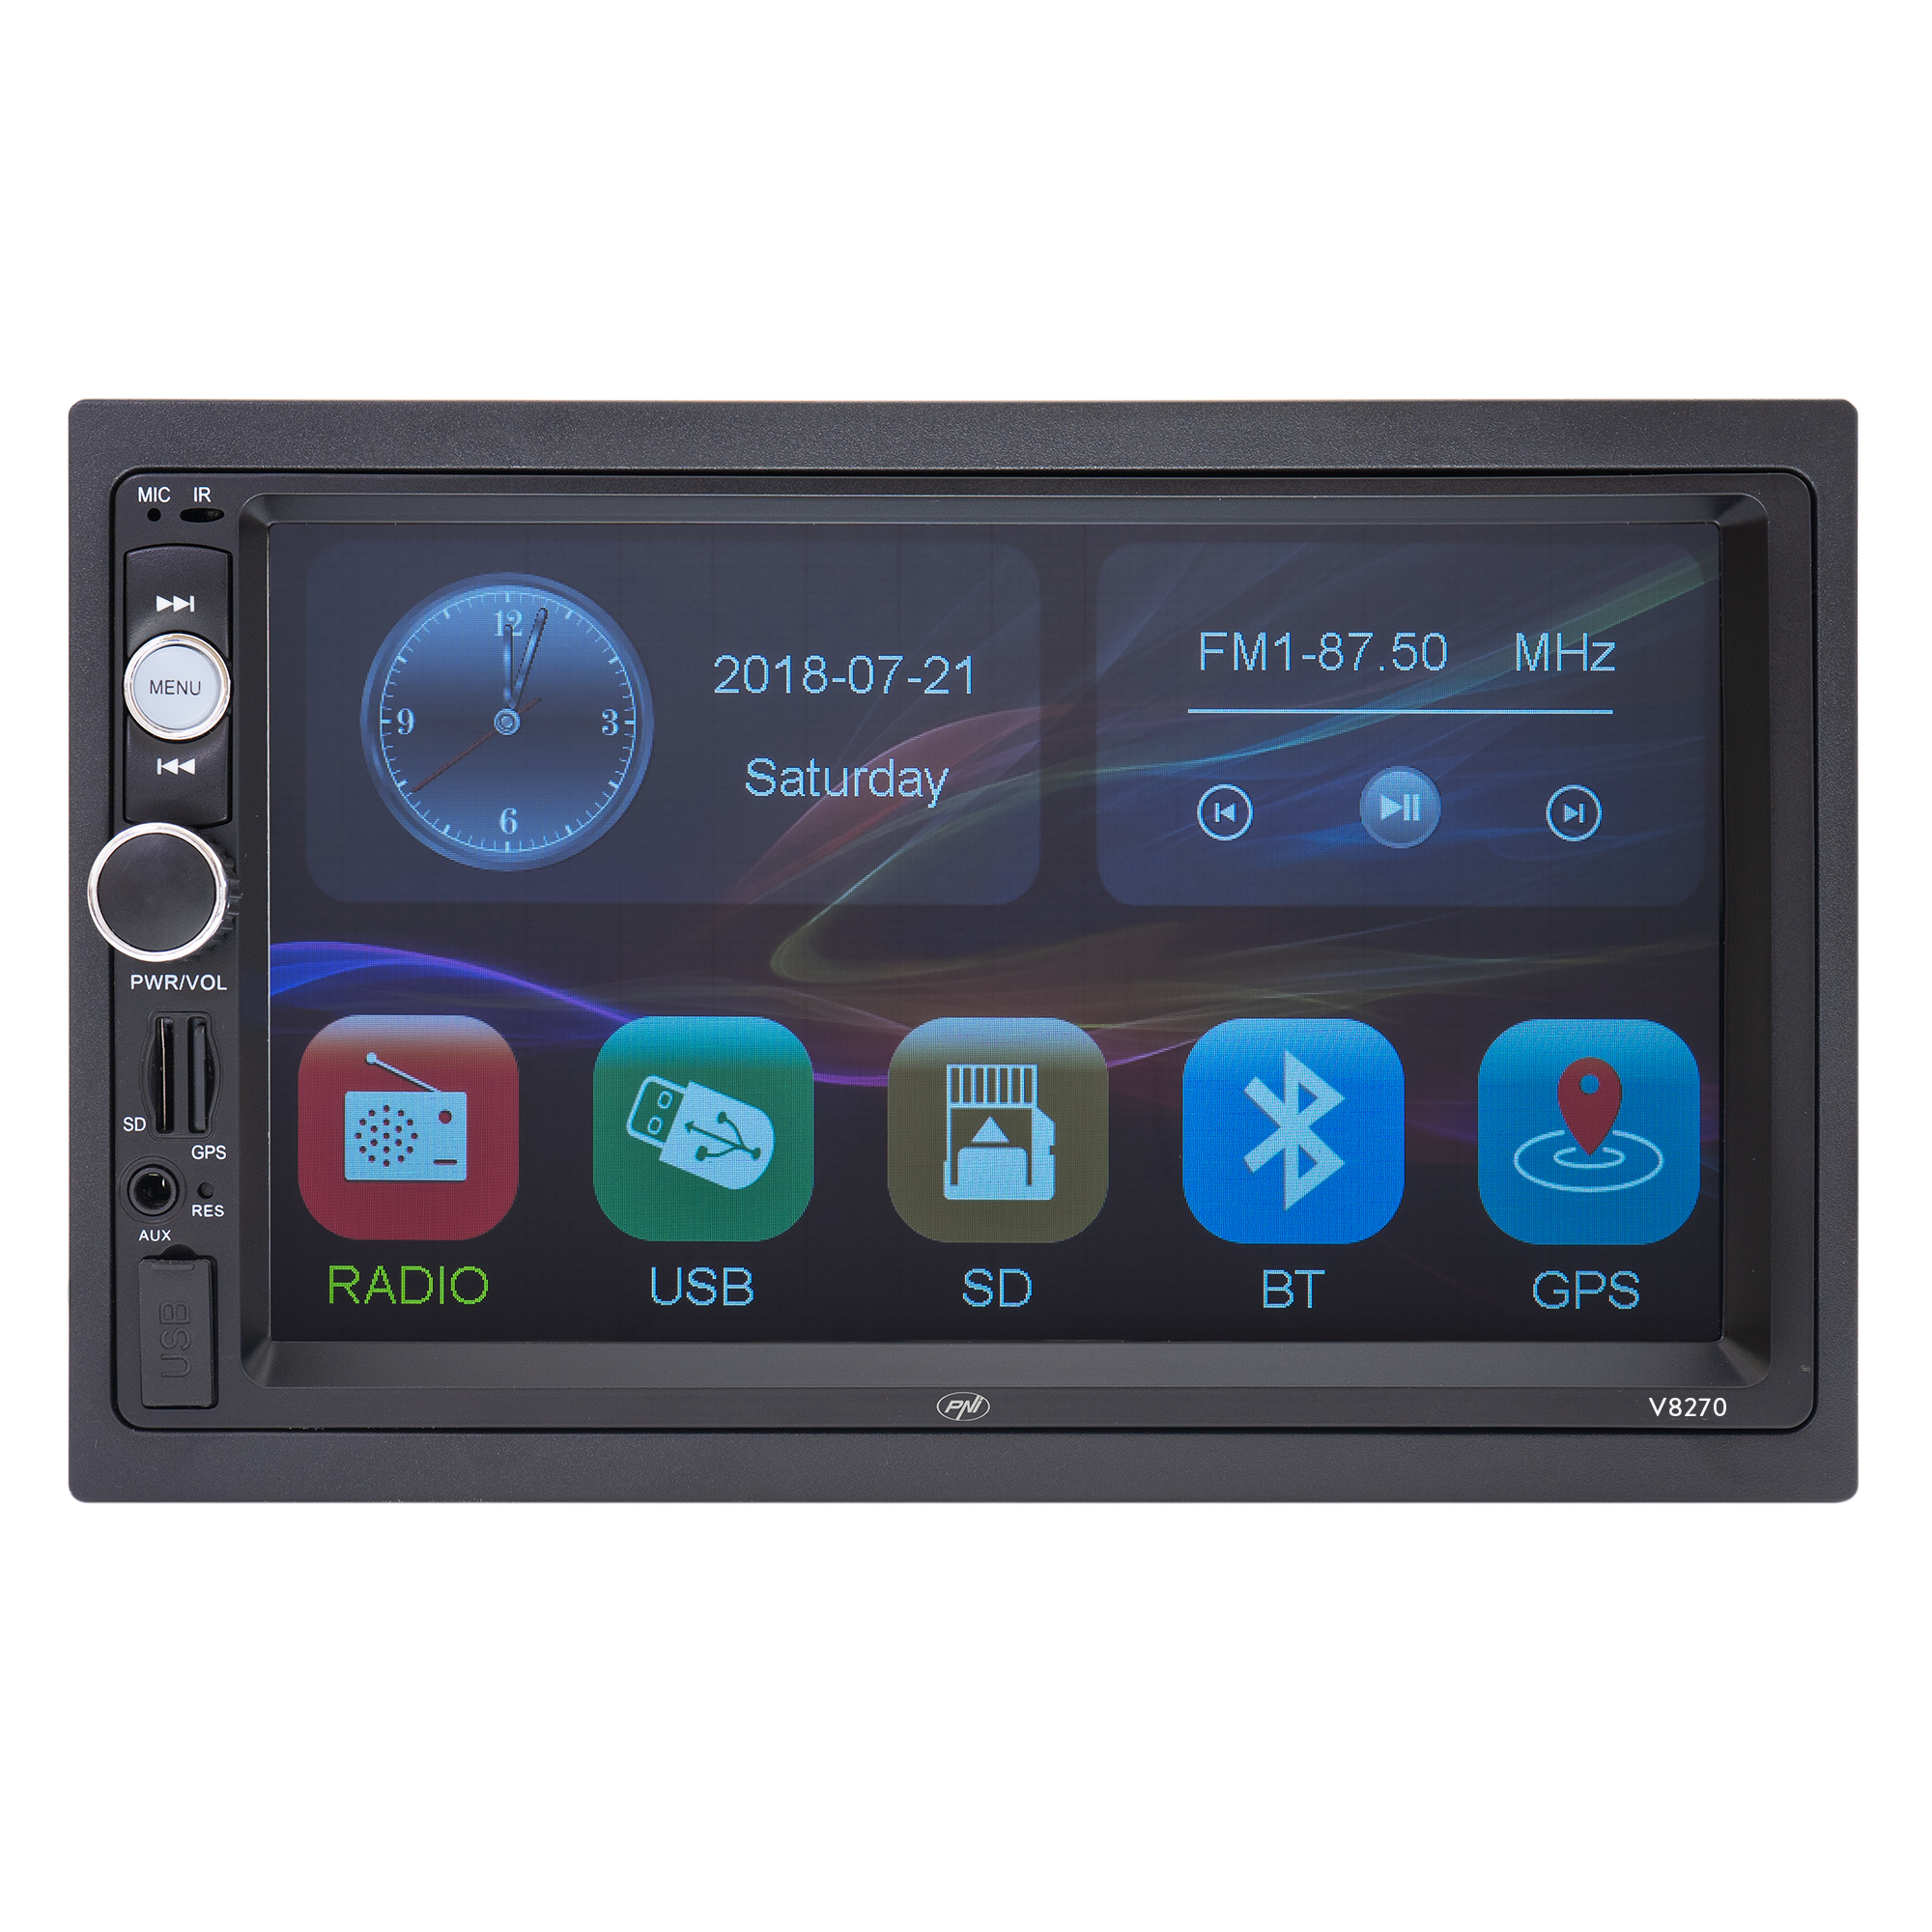 Navigatie multimedia PNI V8270 2 DIN cu GPS MP5, touch screen 7 inch, radio FM, Bluetooth, Mirror Link, AUX, USB, microSD PNI imagine noua 2022